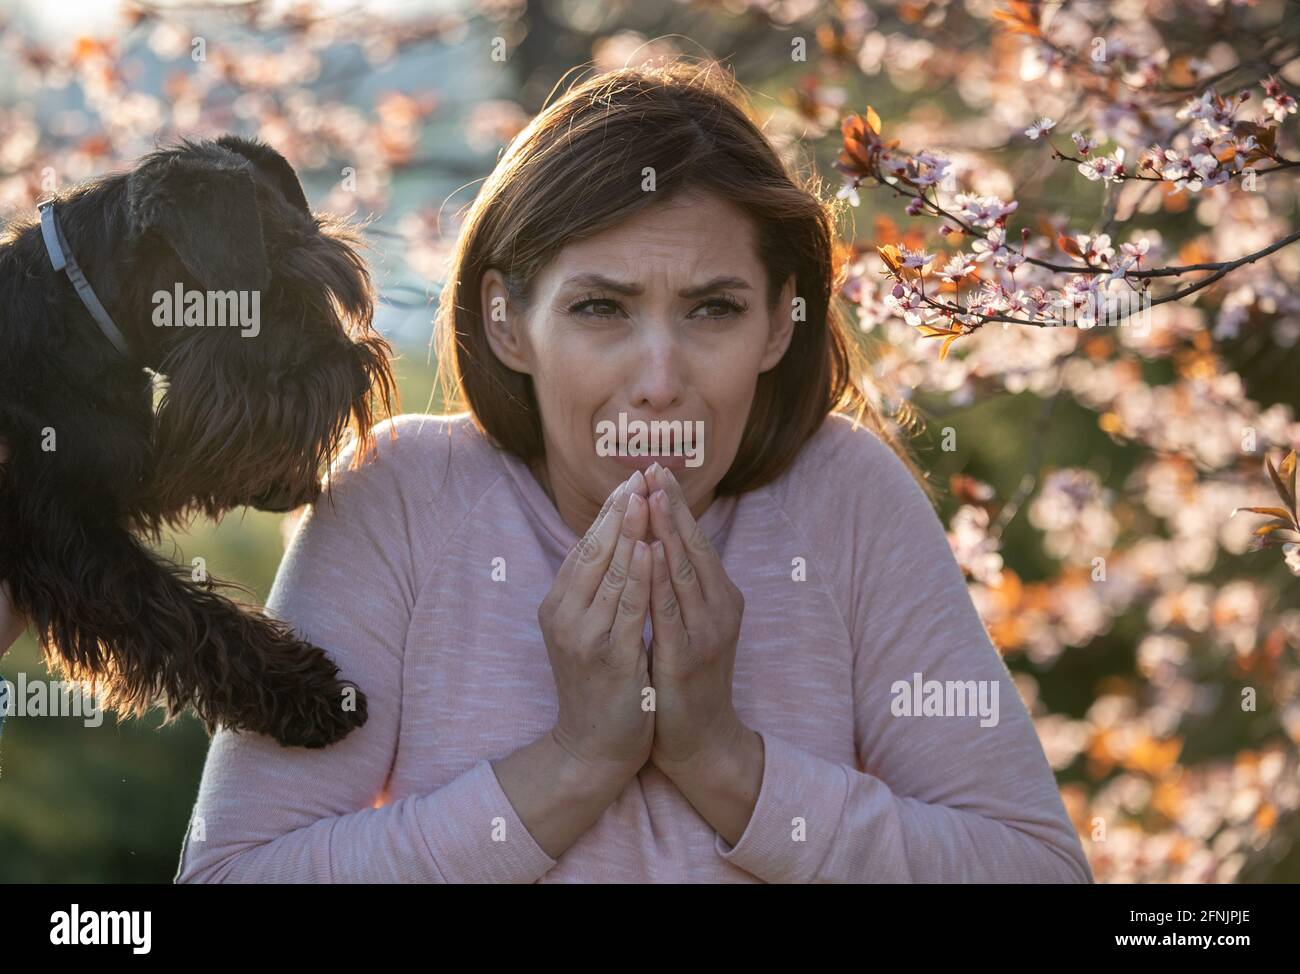 Ängstliches Mädchen, das neben dem Hund und dem blühenden Baum steht, hat eine allergische Reaktion auf Pollen und Tierhaare Stockfoto